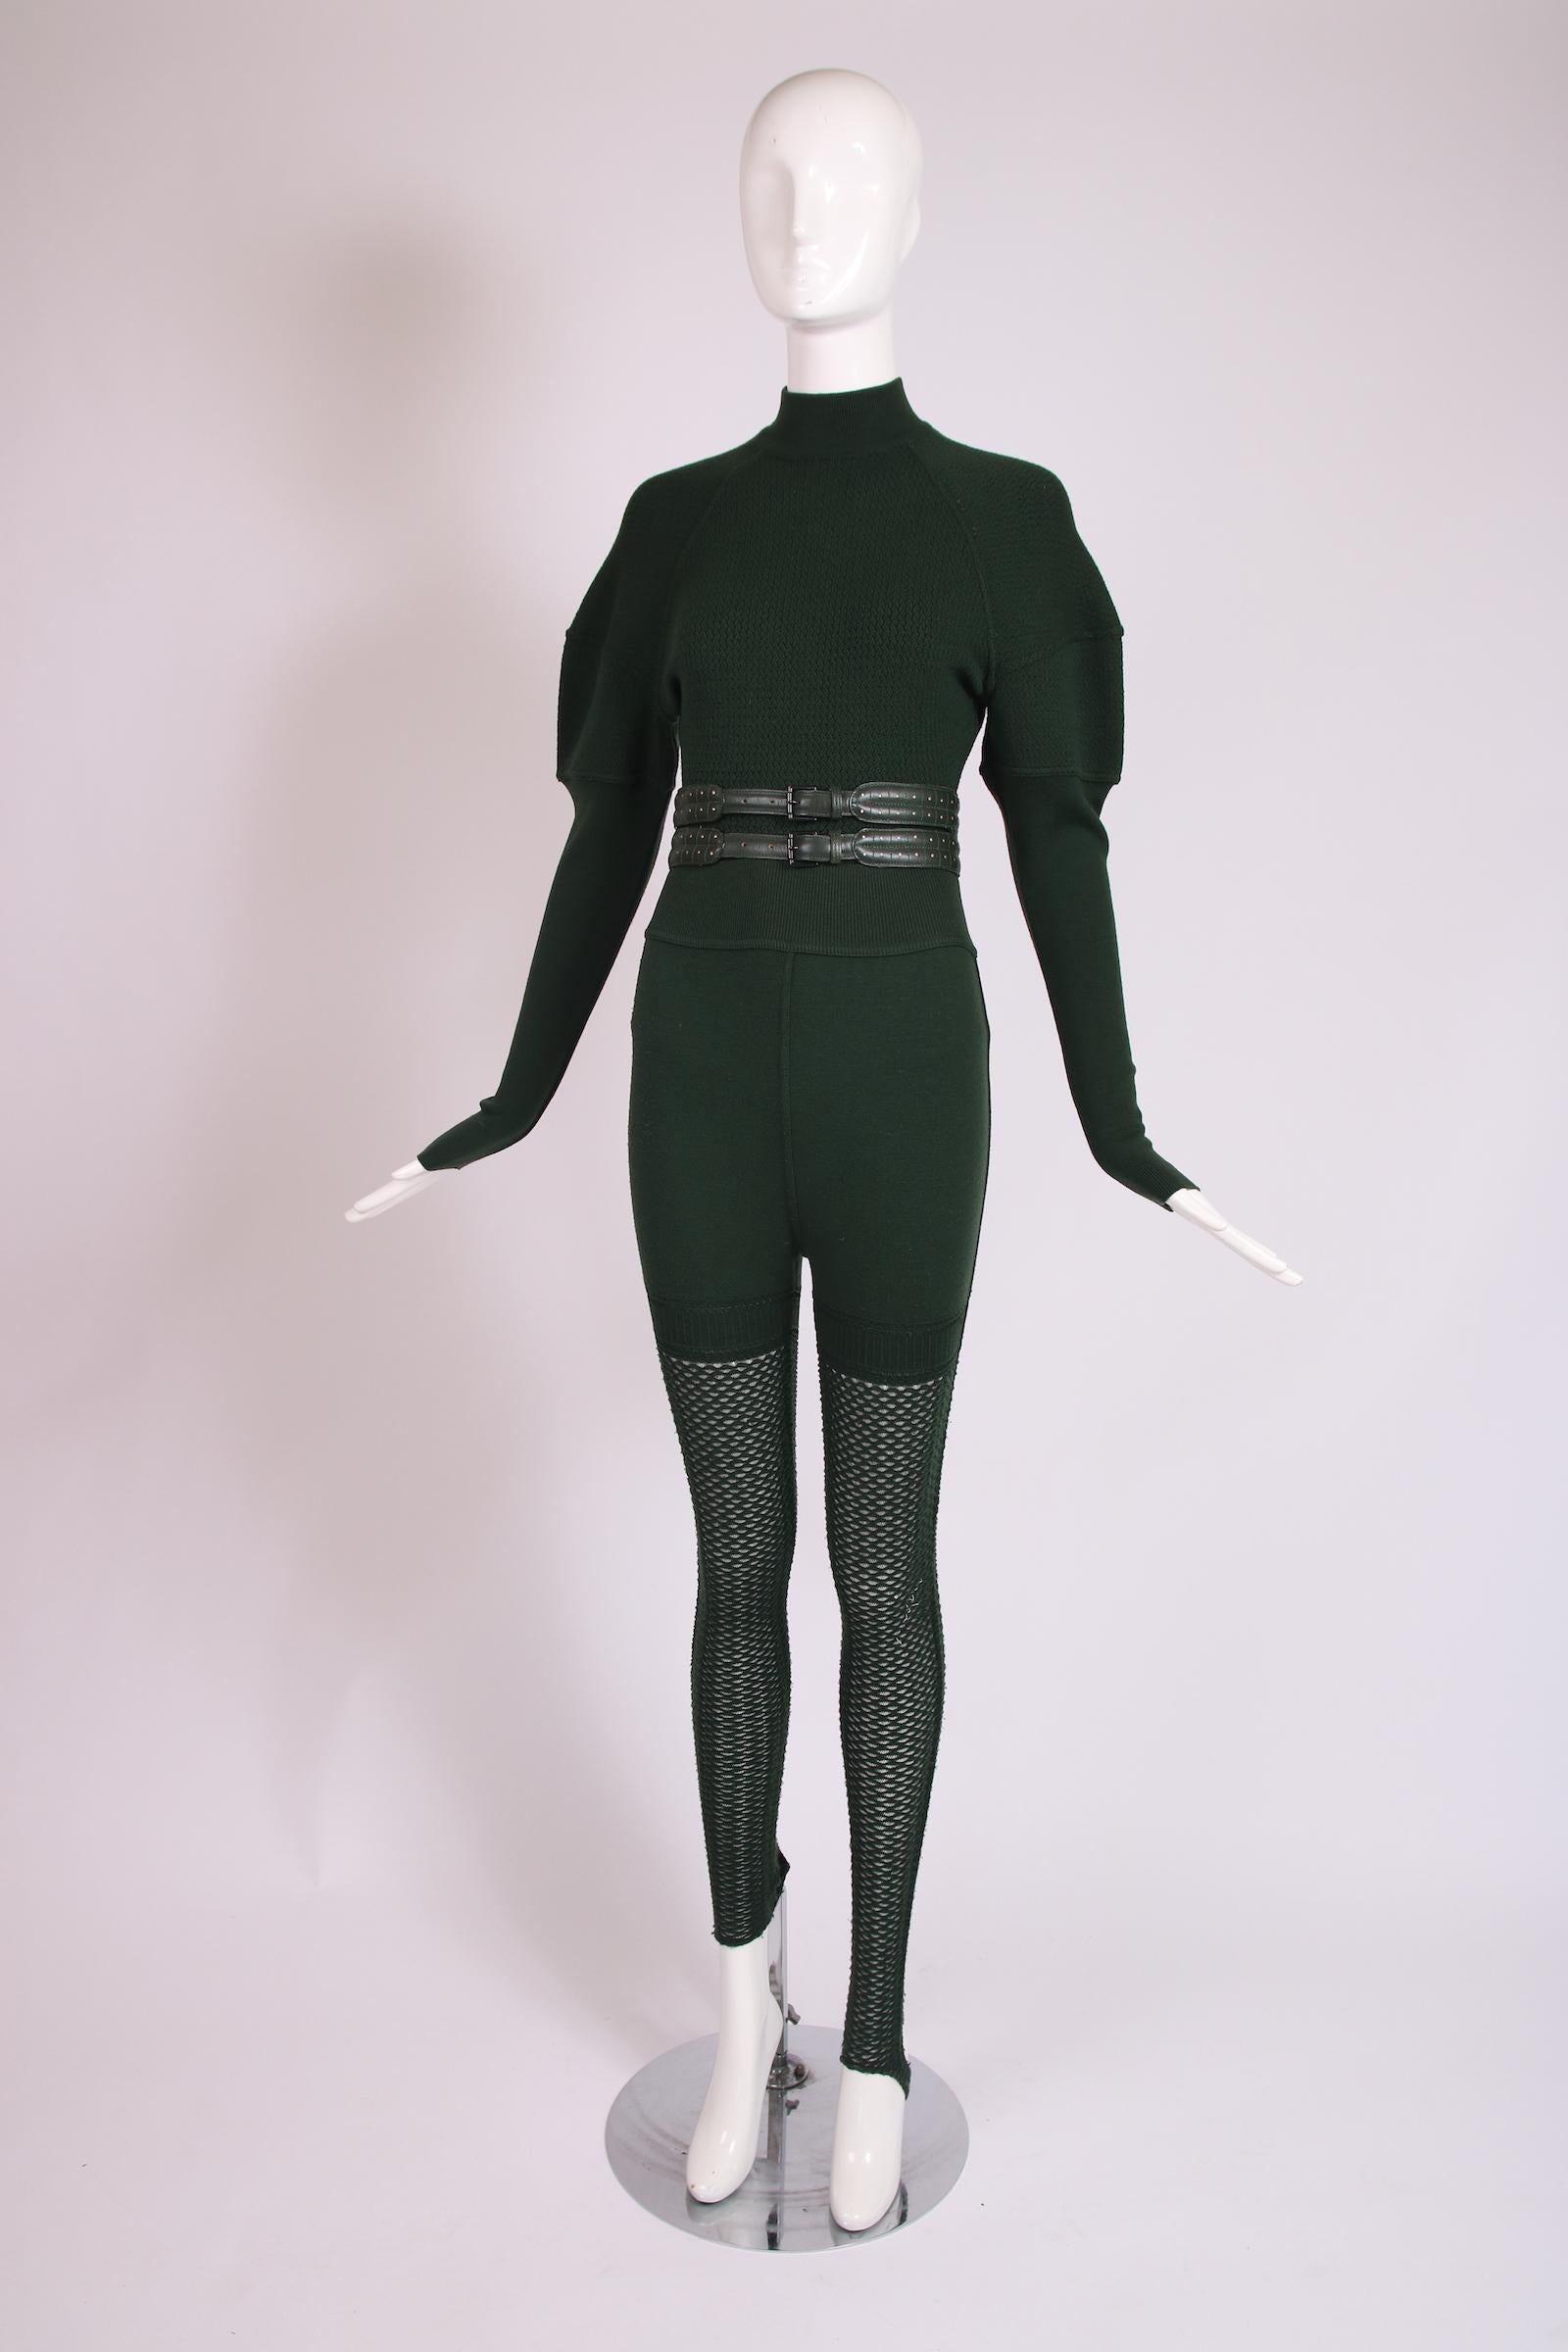 Ensemble Alaia du début des années 1990, composé d'un body vert en laine stretch et rayonne, d'un legging à étriers et d'une ceinture. Le body combine la laine de deux tissages distincts et présente un col roulé fantaisie, de subtiles manches mouton